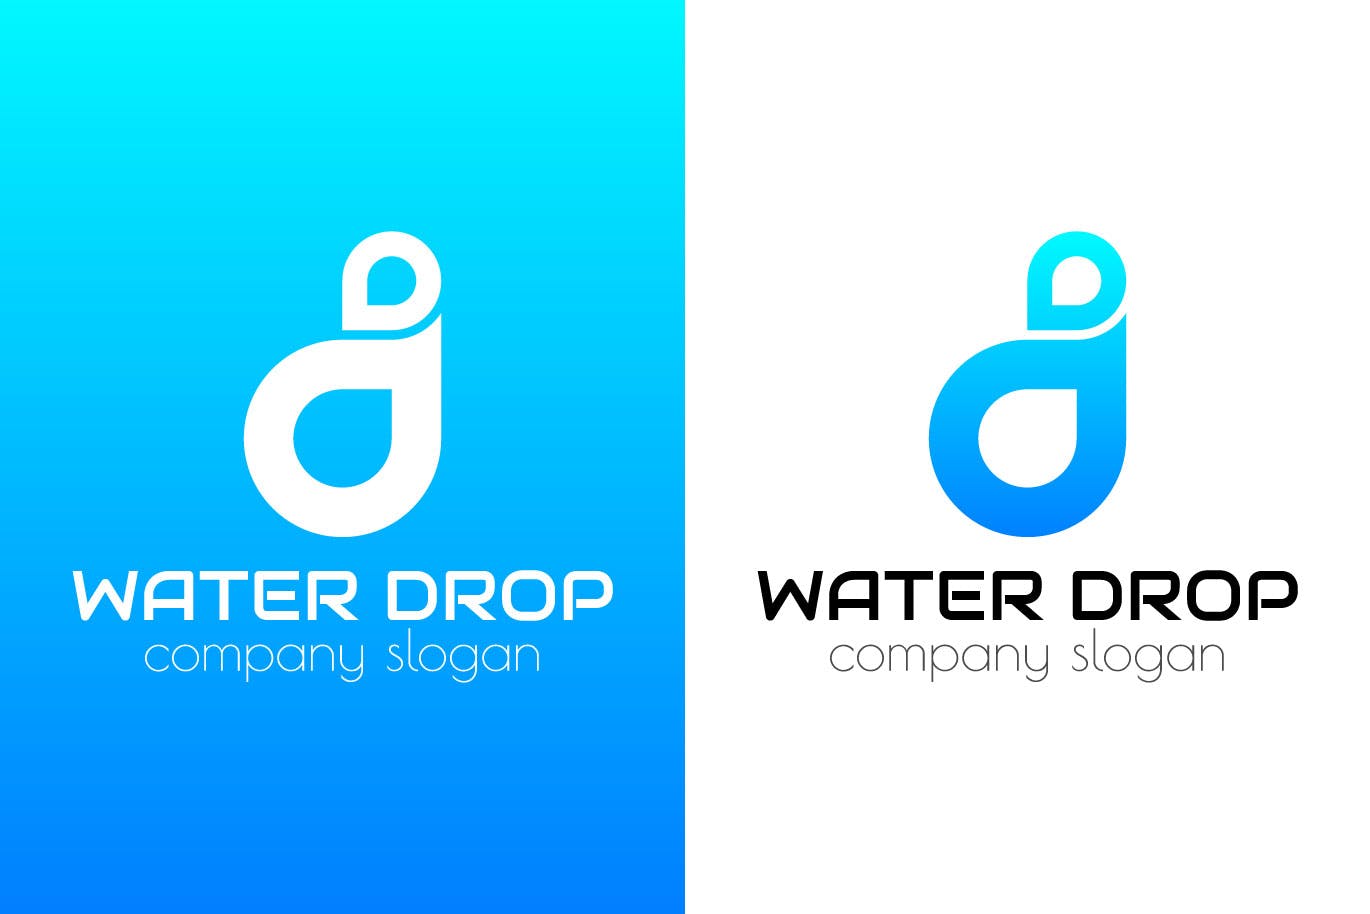 水滴几何图形创意Logo设计蚂蚁素材精选模板 Water Drop Creative Logo Template插图(1)